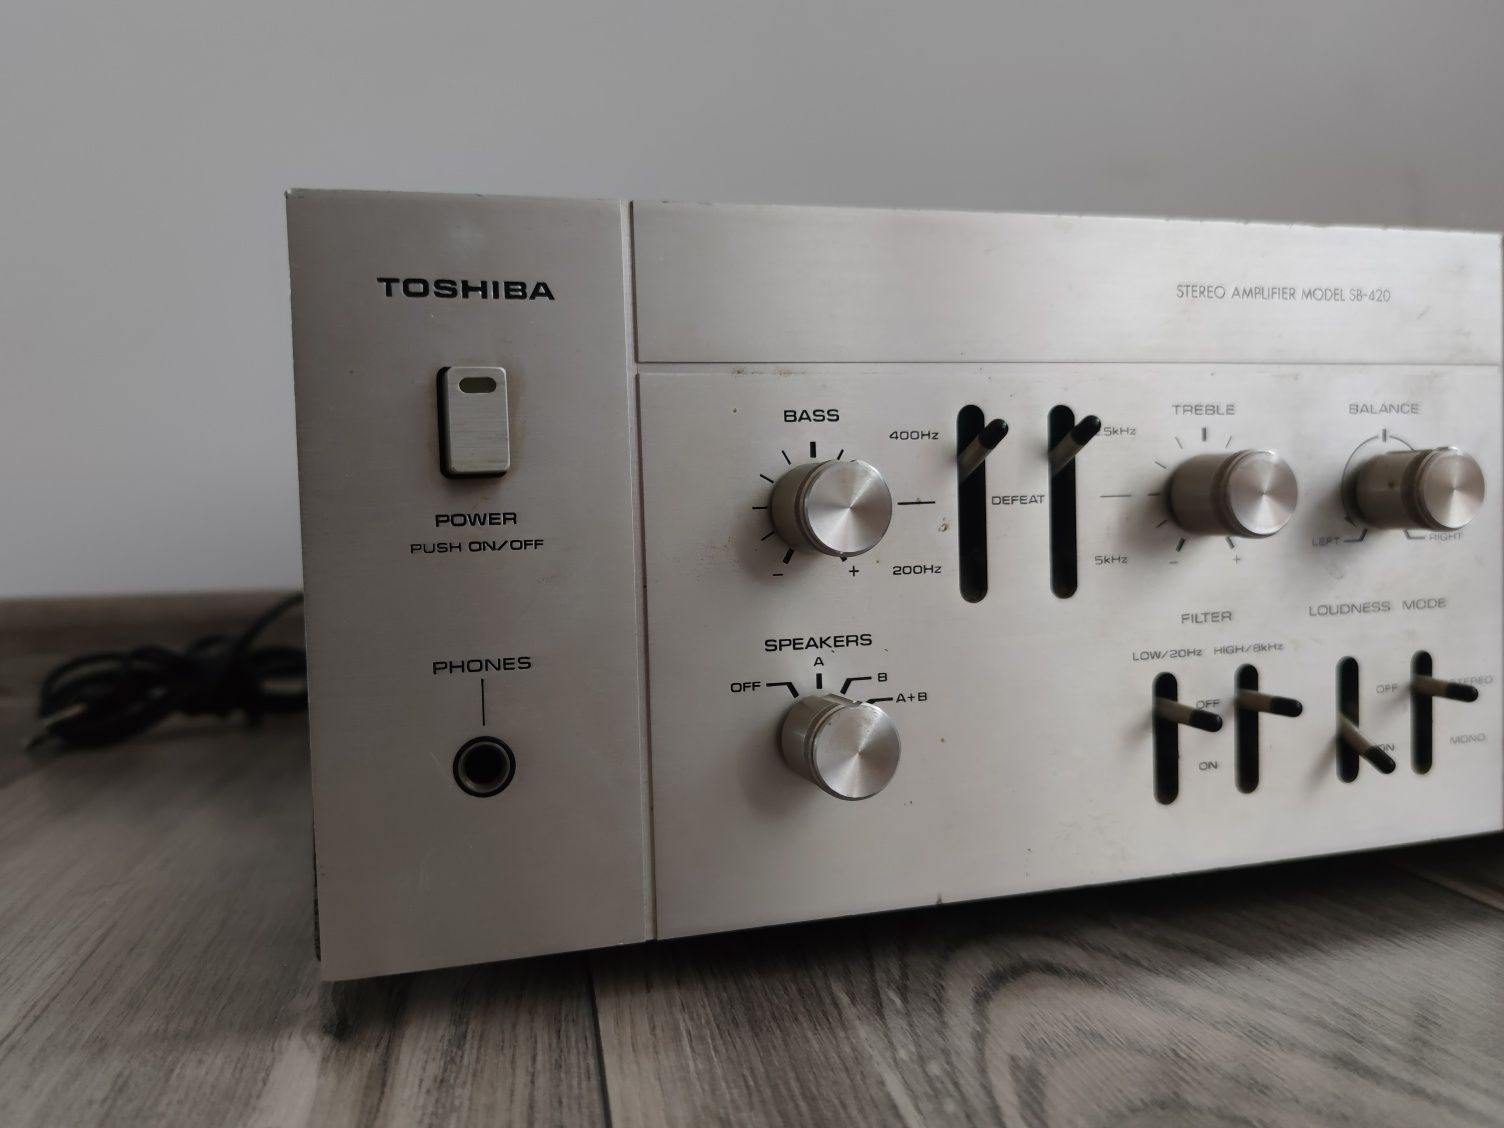 Toshiba SB-420 piękny wzmacniacz stereo vintage z lat 70-tych